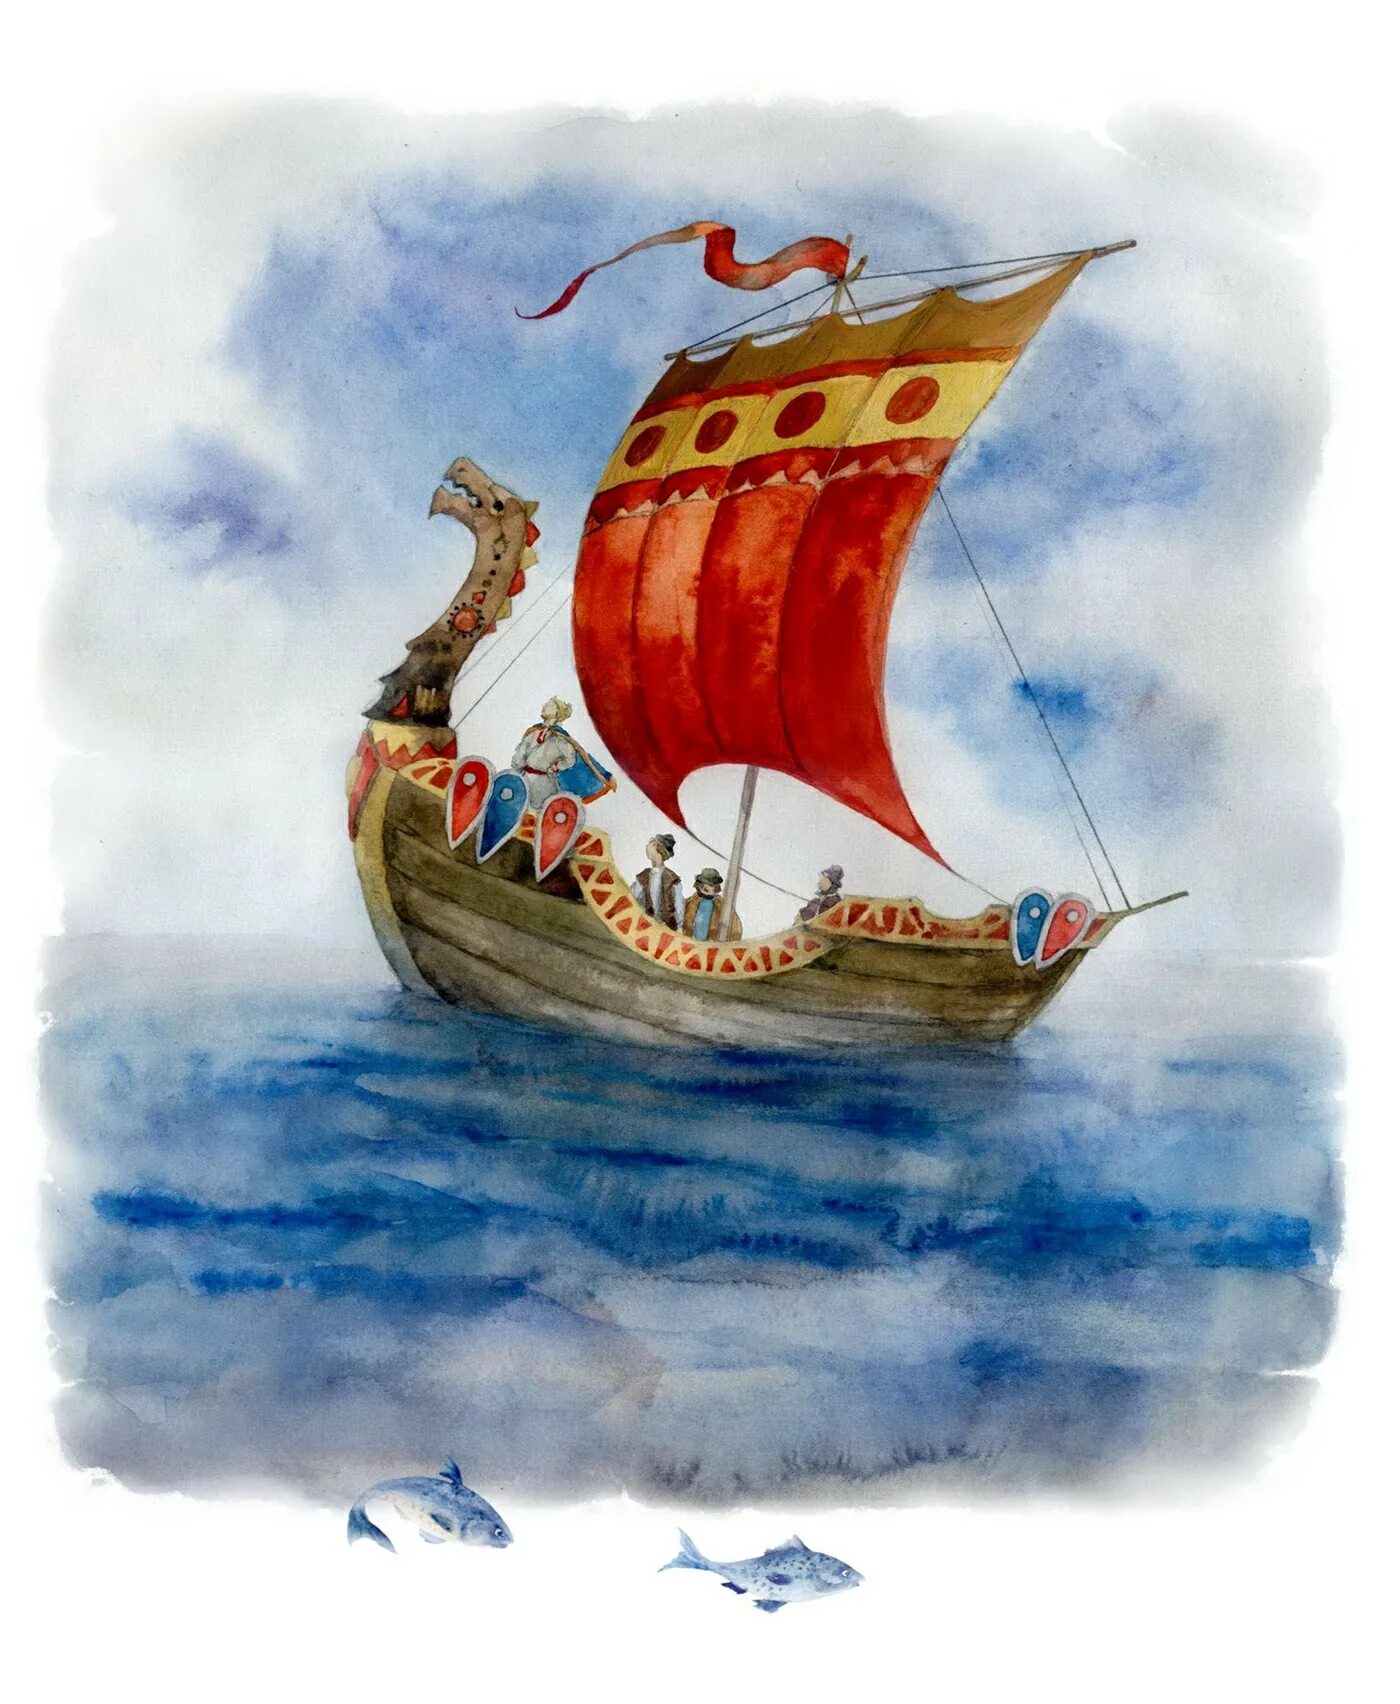 Богатыри на Соколе корабле Былина. Иллюстрации былины богатыри на Соколе корабле. Без ладьи